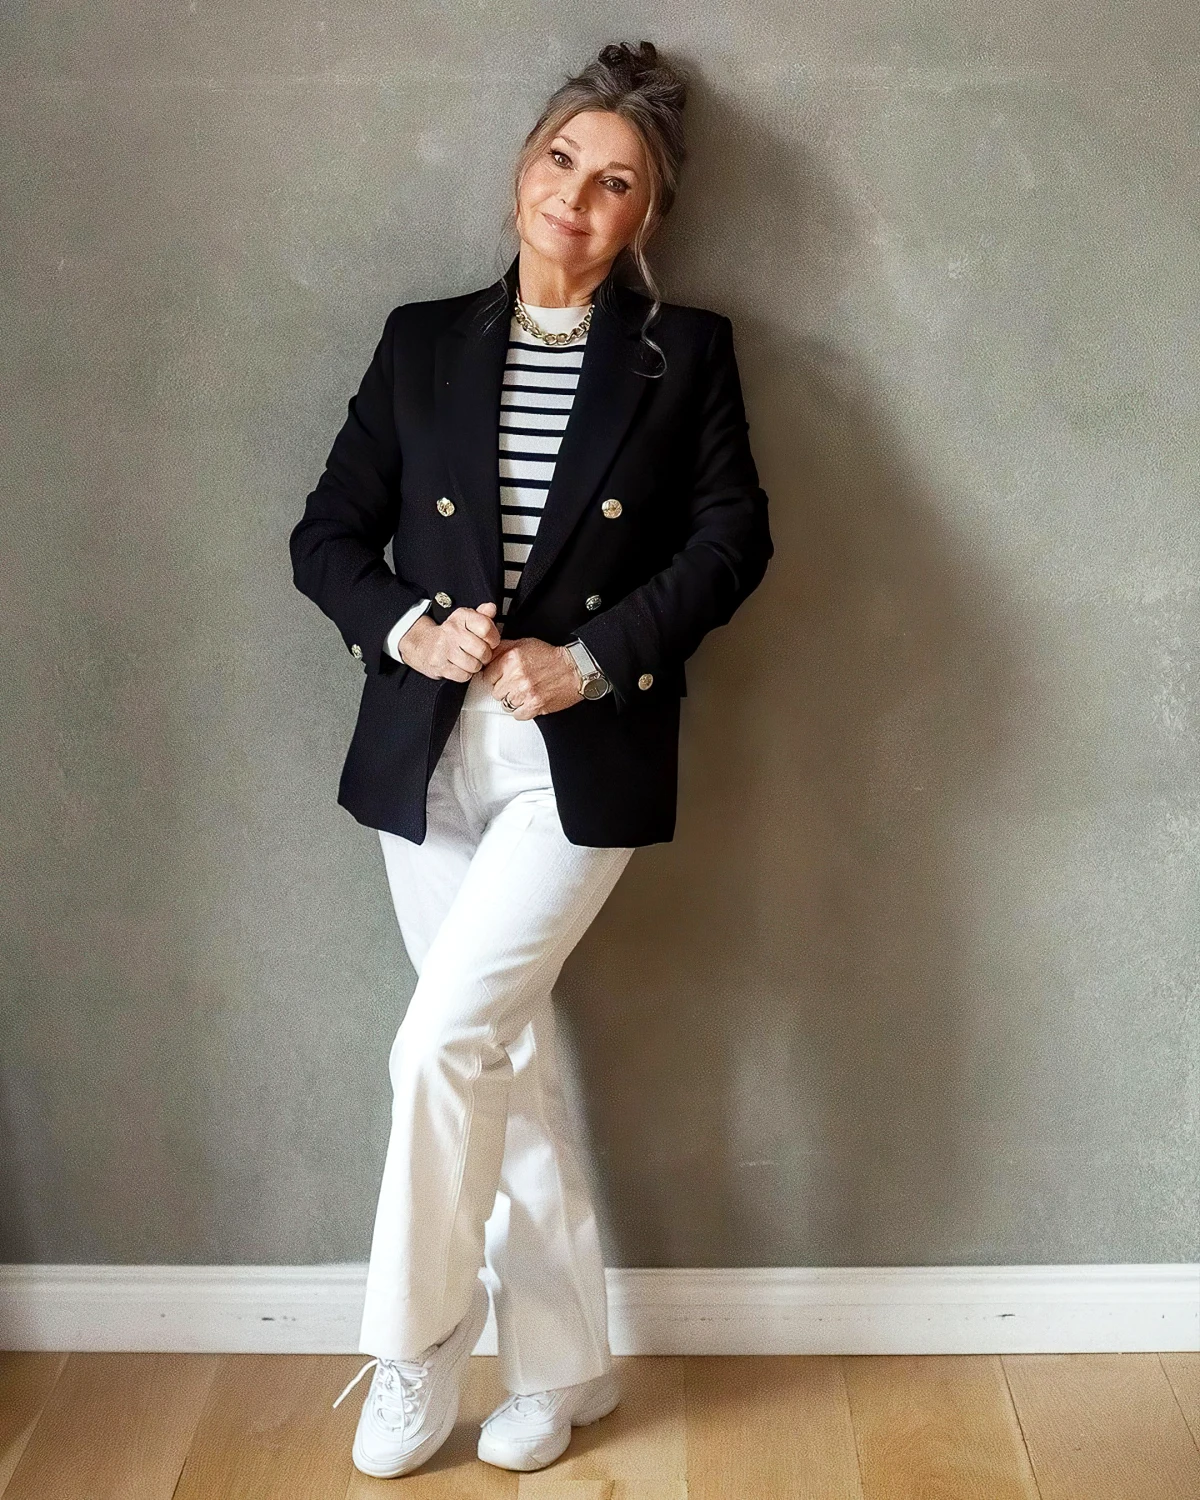 comment s habiller apres 50 ans pour paraitre jeune jean blanc